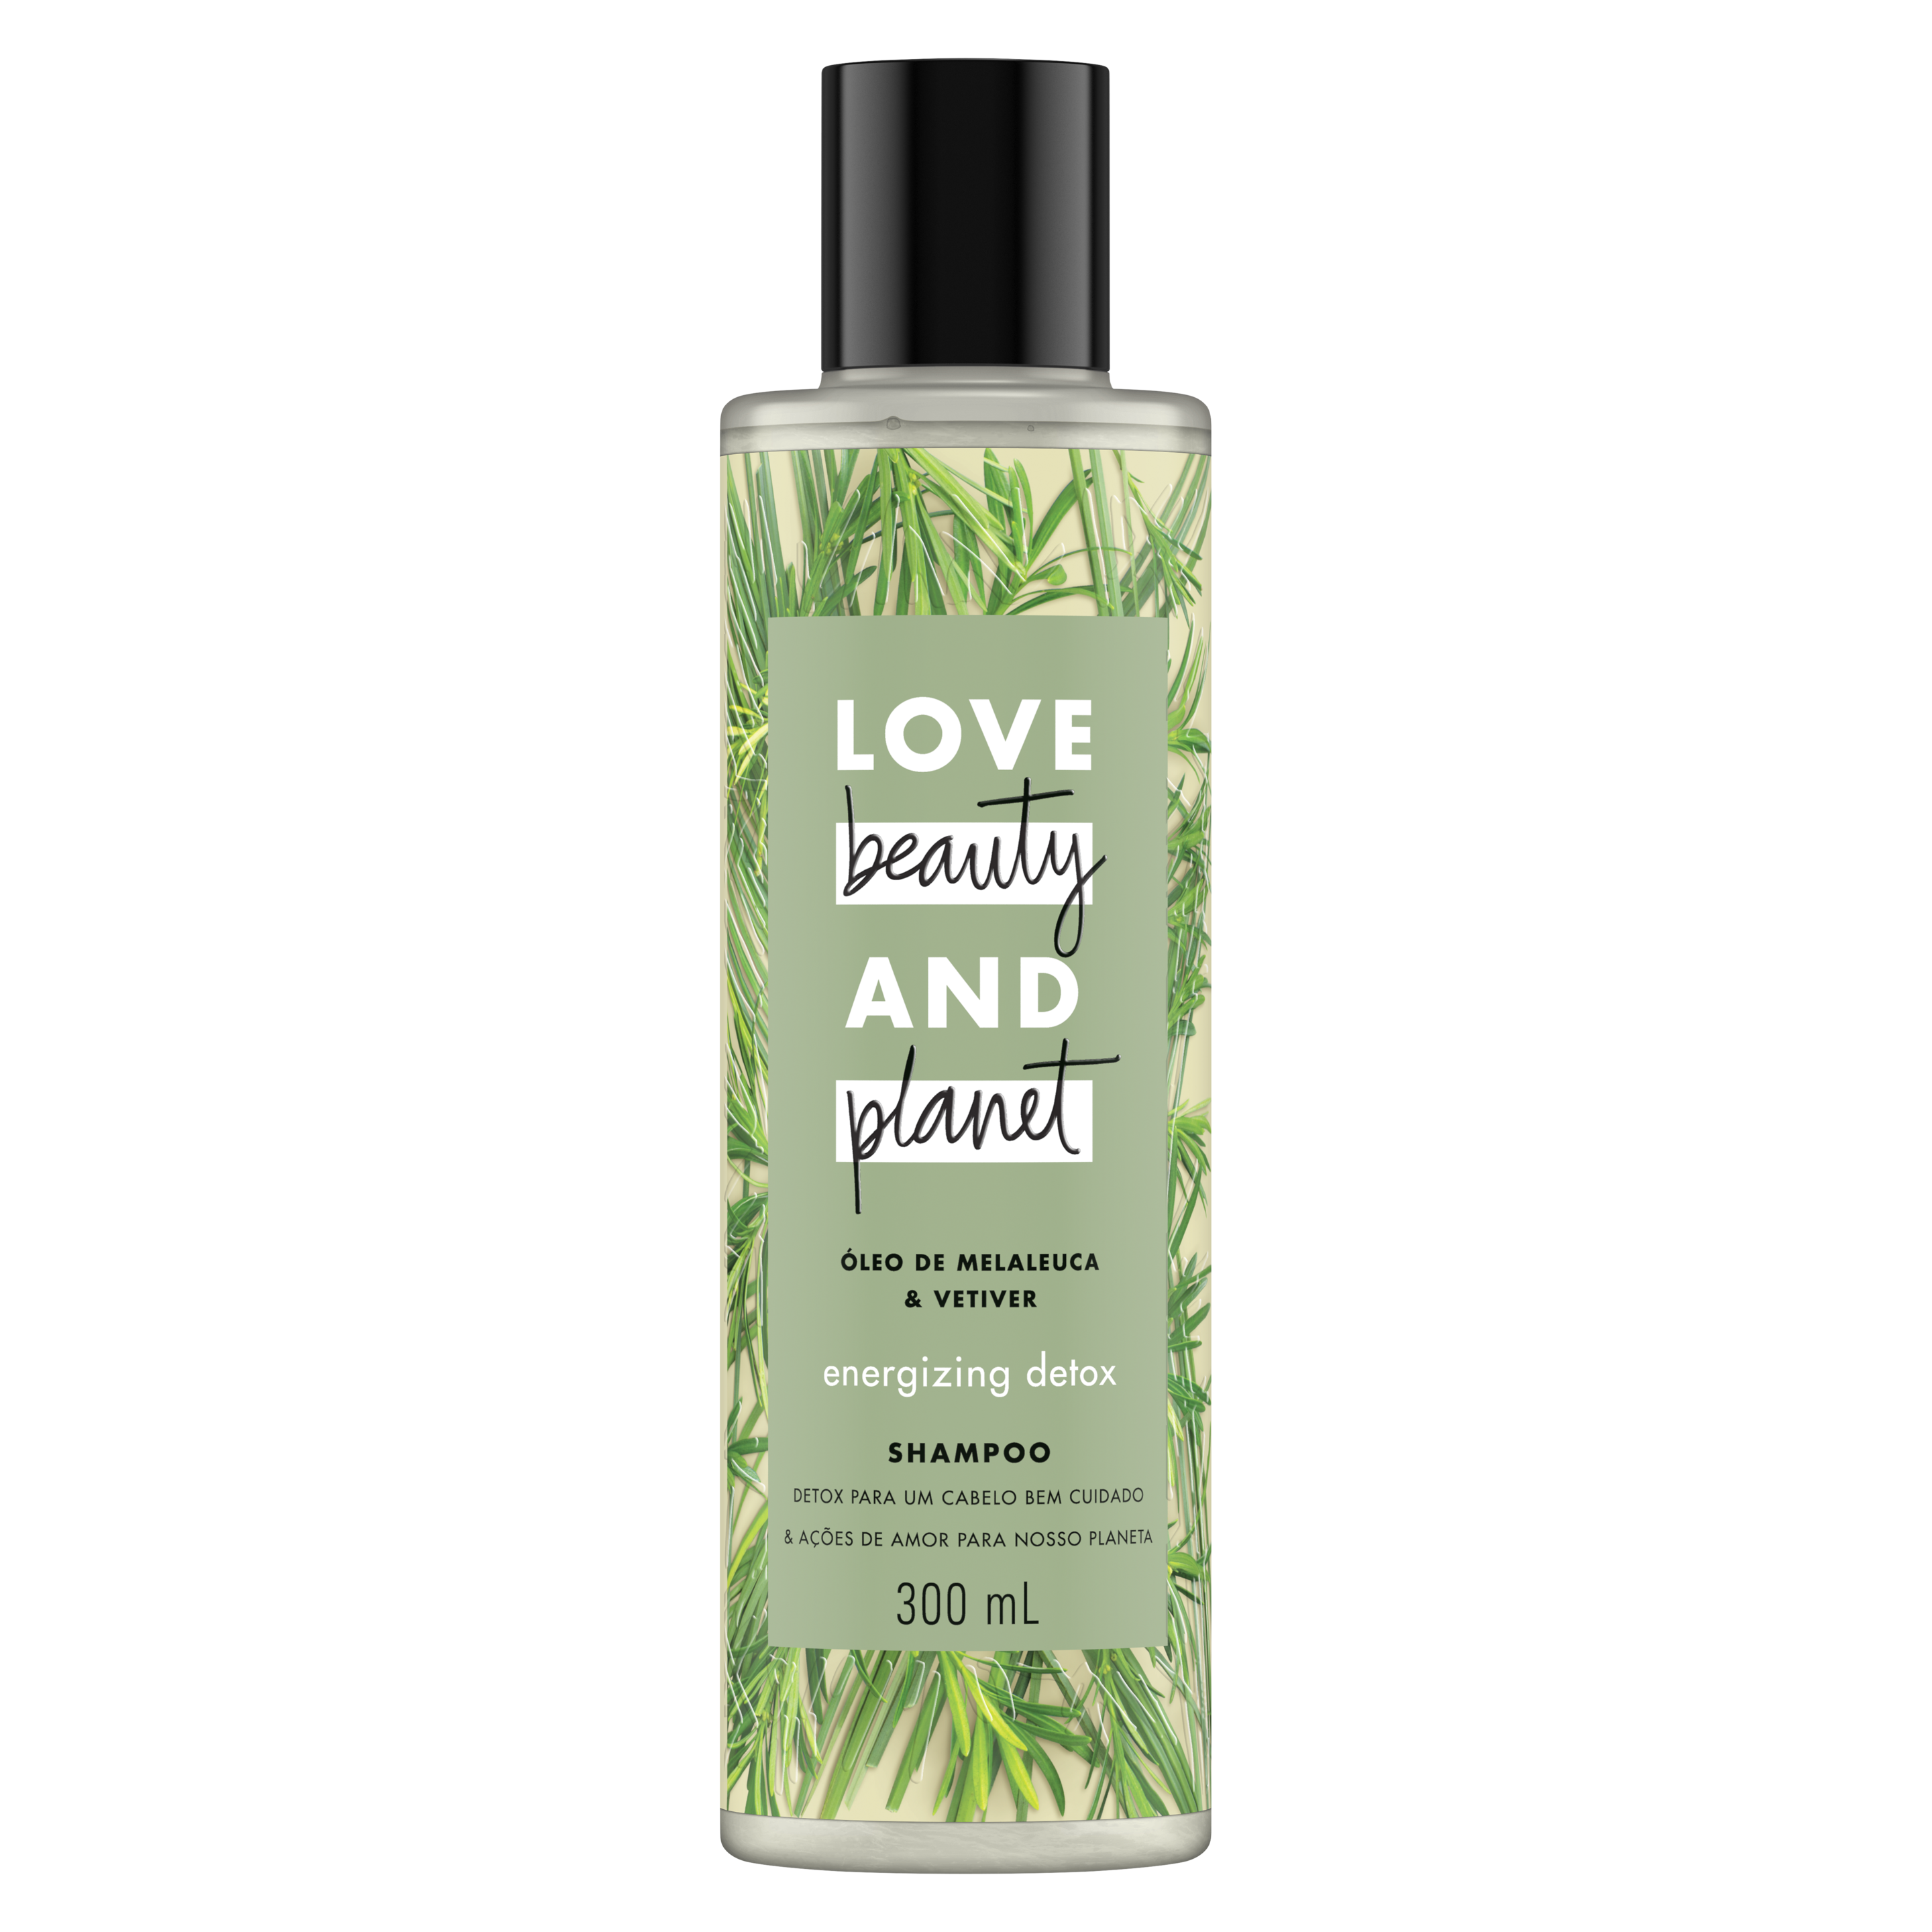 Frente da embalagem do shampoo com maleleuca Love Beauty and Planet óleo de melaleuca & vetiver 300 ml Text